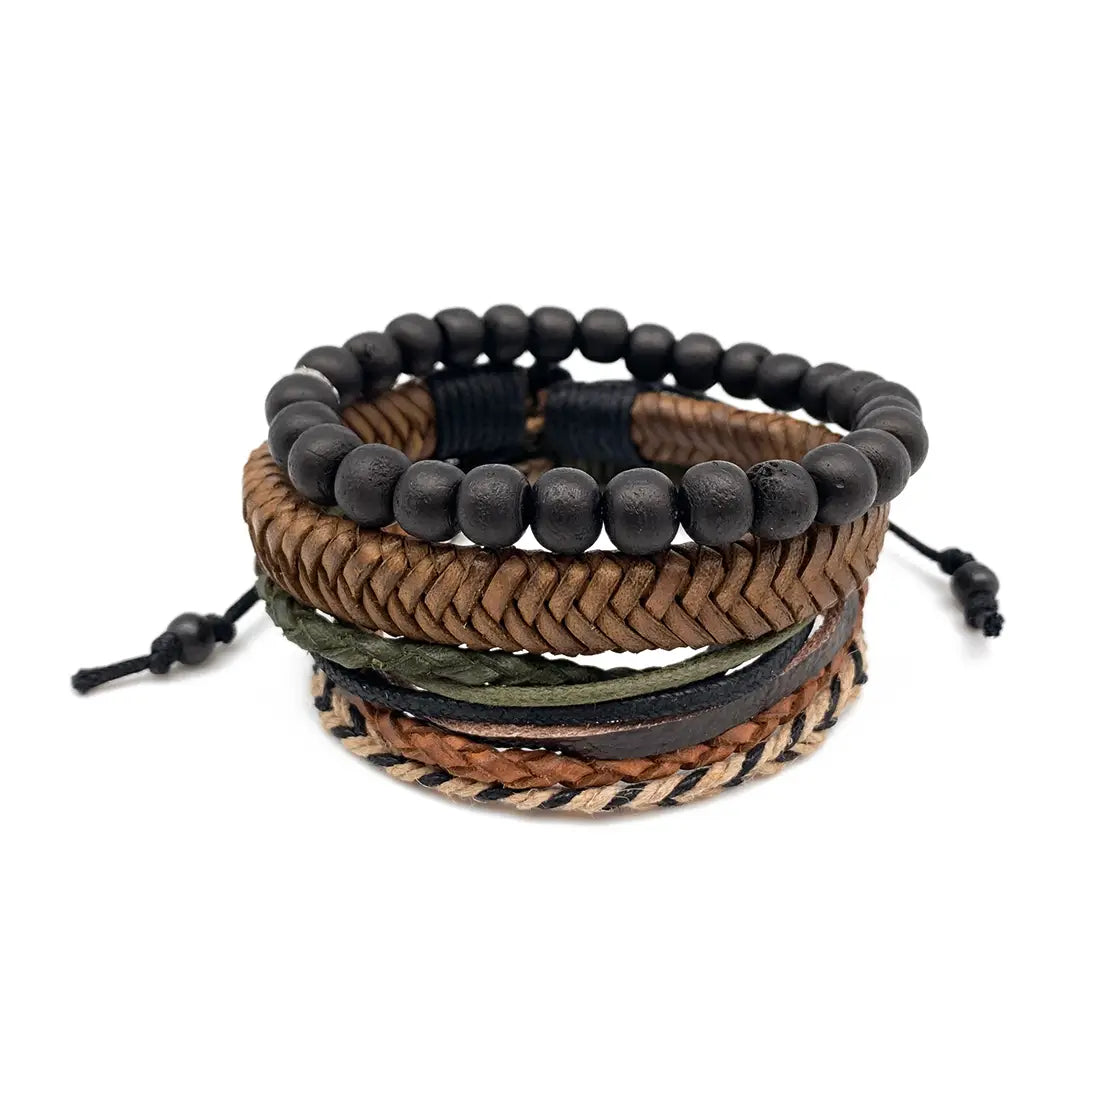 Bracelet Bundle: Beads, Leather, Mixed Wrap